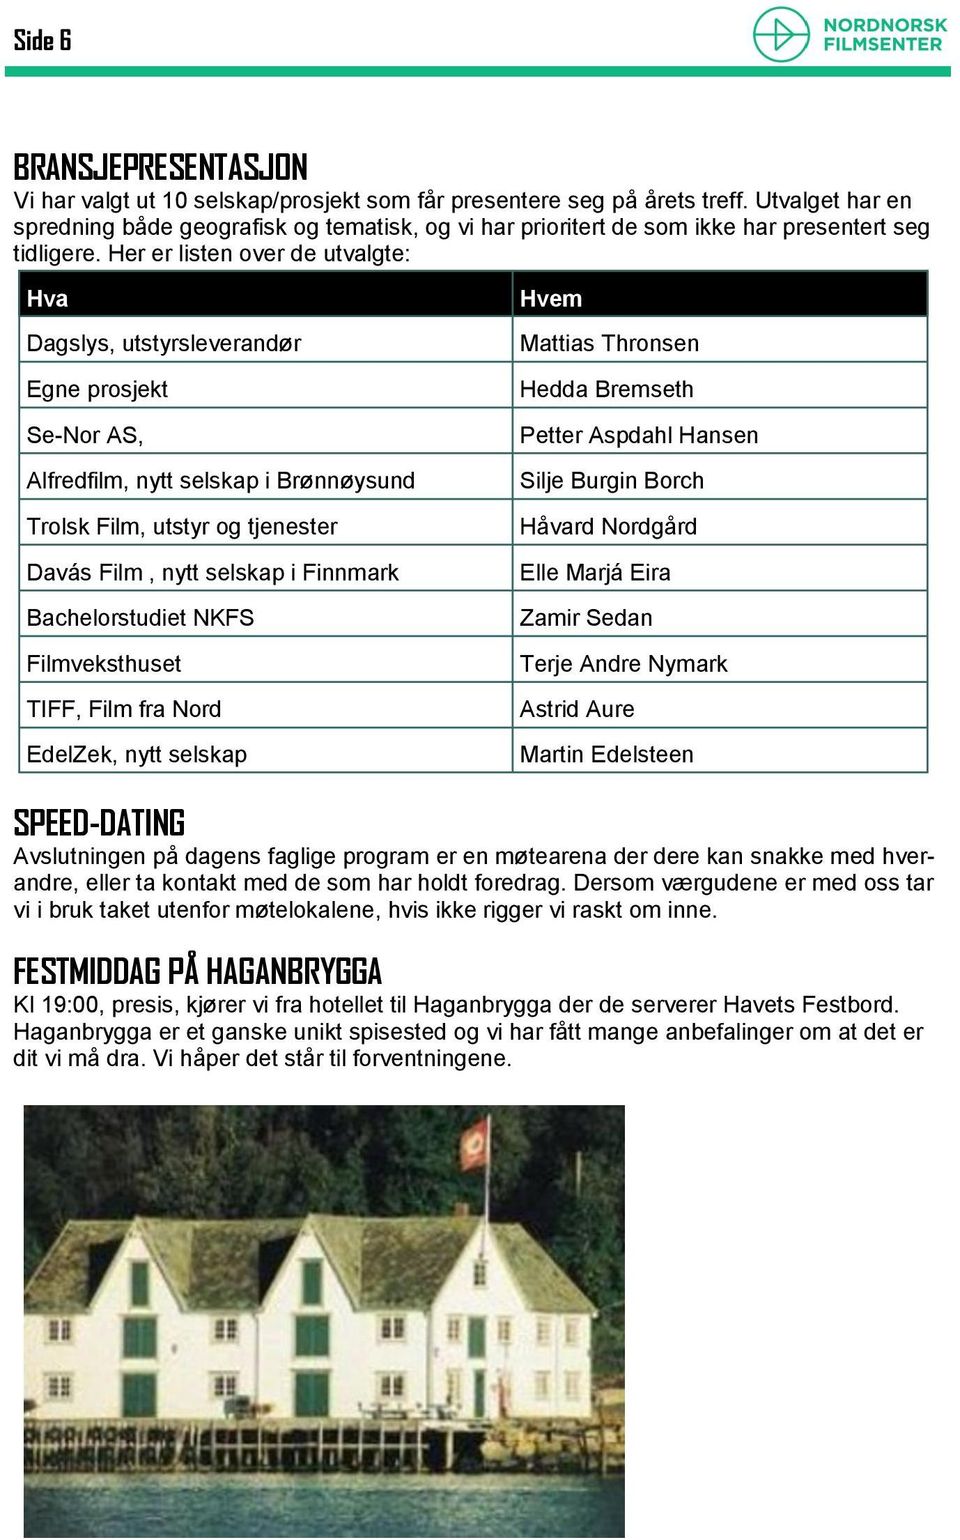 Her er listen over de utvalgte: Hva Dagslys, utstyrsleverandør Egne prosjekt Se-Nor AS, Alfredfilm, nytt selskap i Brønnøysund Trolsk Film, utstyr og tjenester Davás Film, nytt selskap i Finnmark